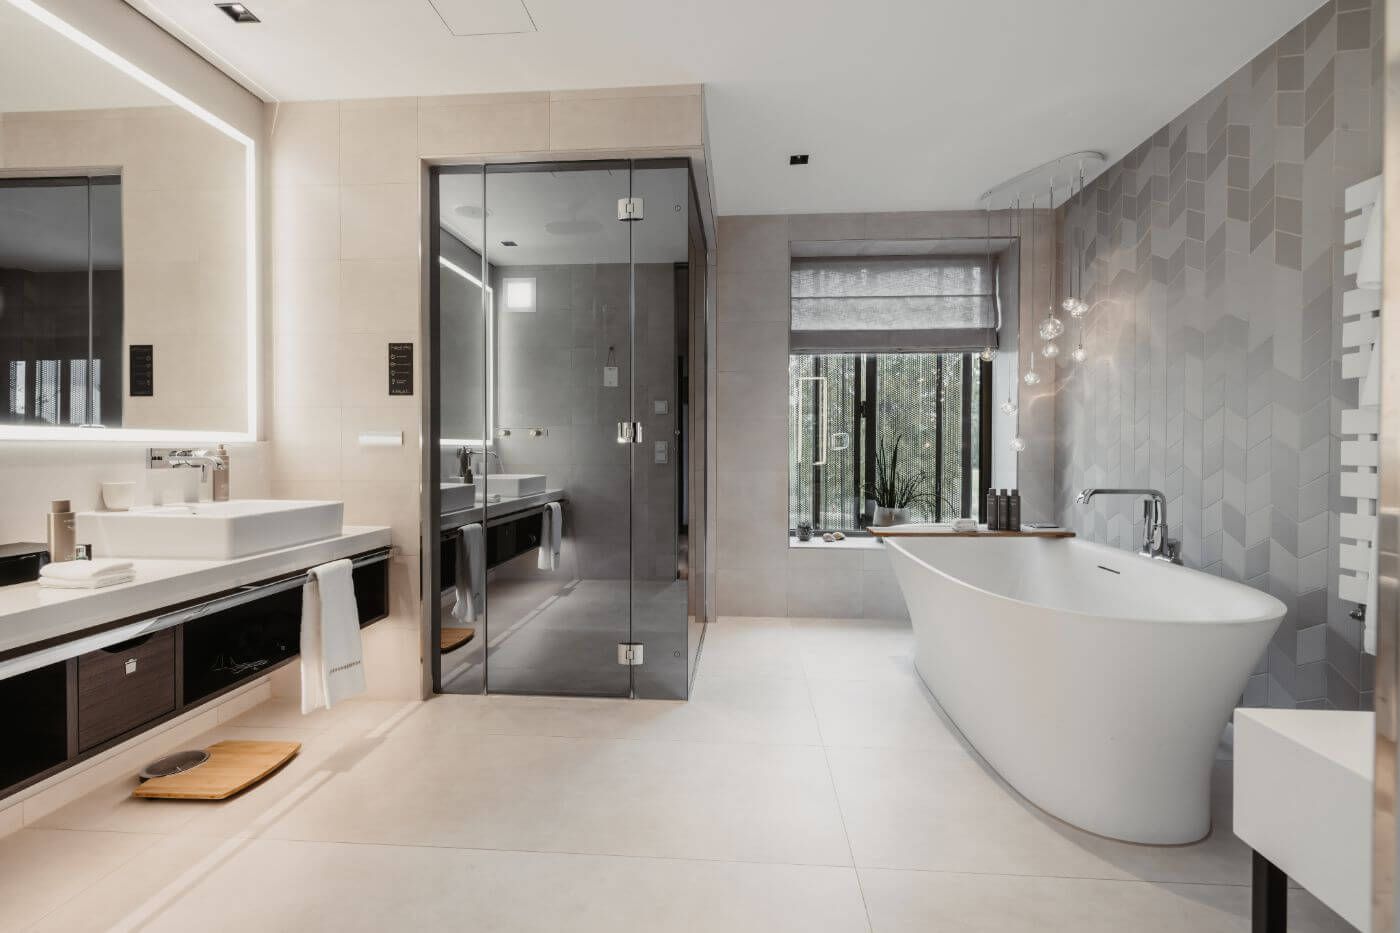 Modernes Badezimmer mit Dusche, beleuchtetem Spiegel und Badewanne am Fenster